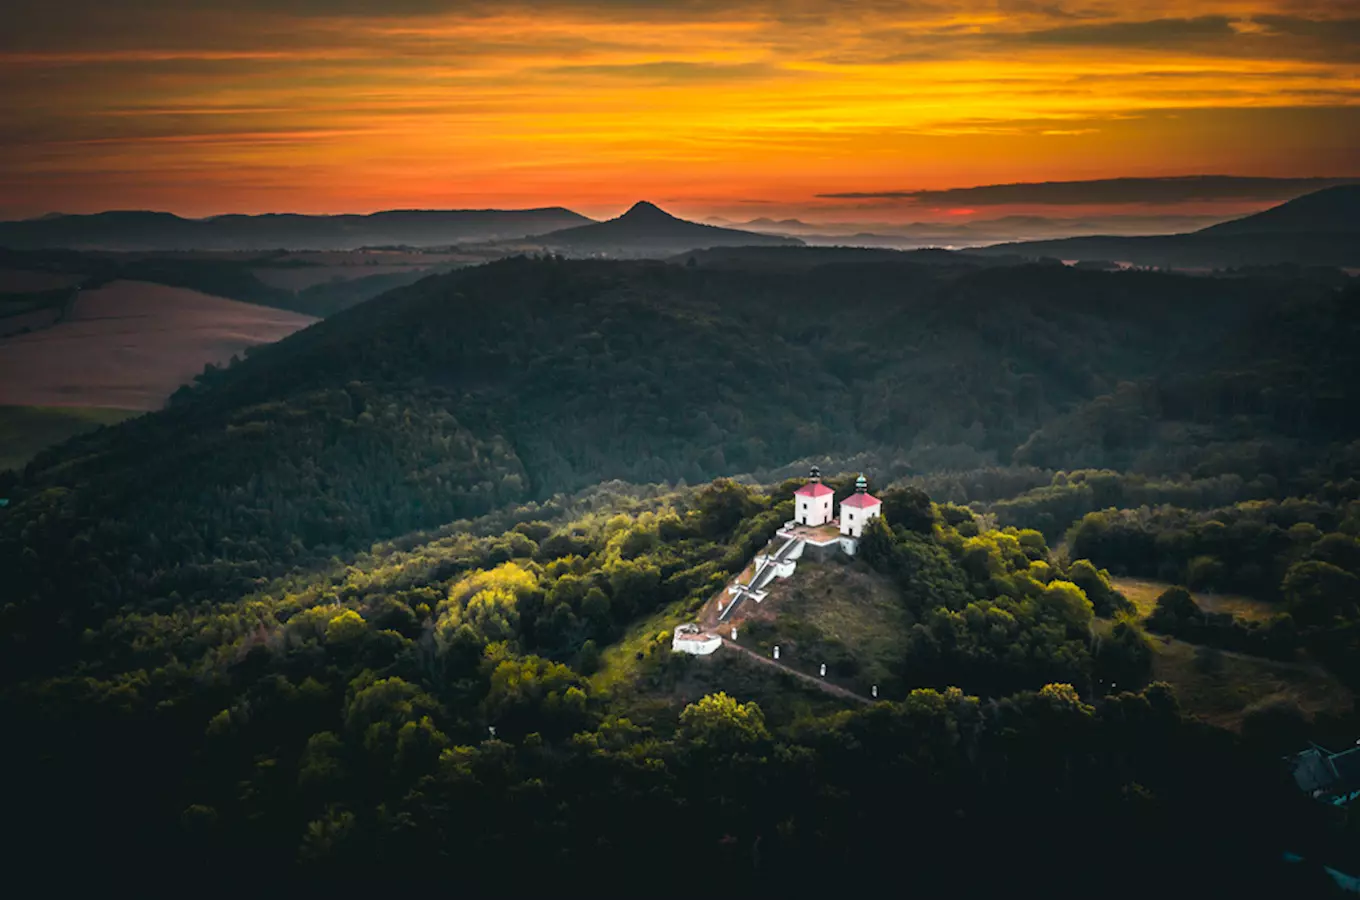 Kam na výlet do přírody v okolí Ústí nad Labem? Lákají hory, strmá údolí a malebná skalní města